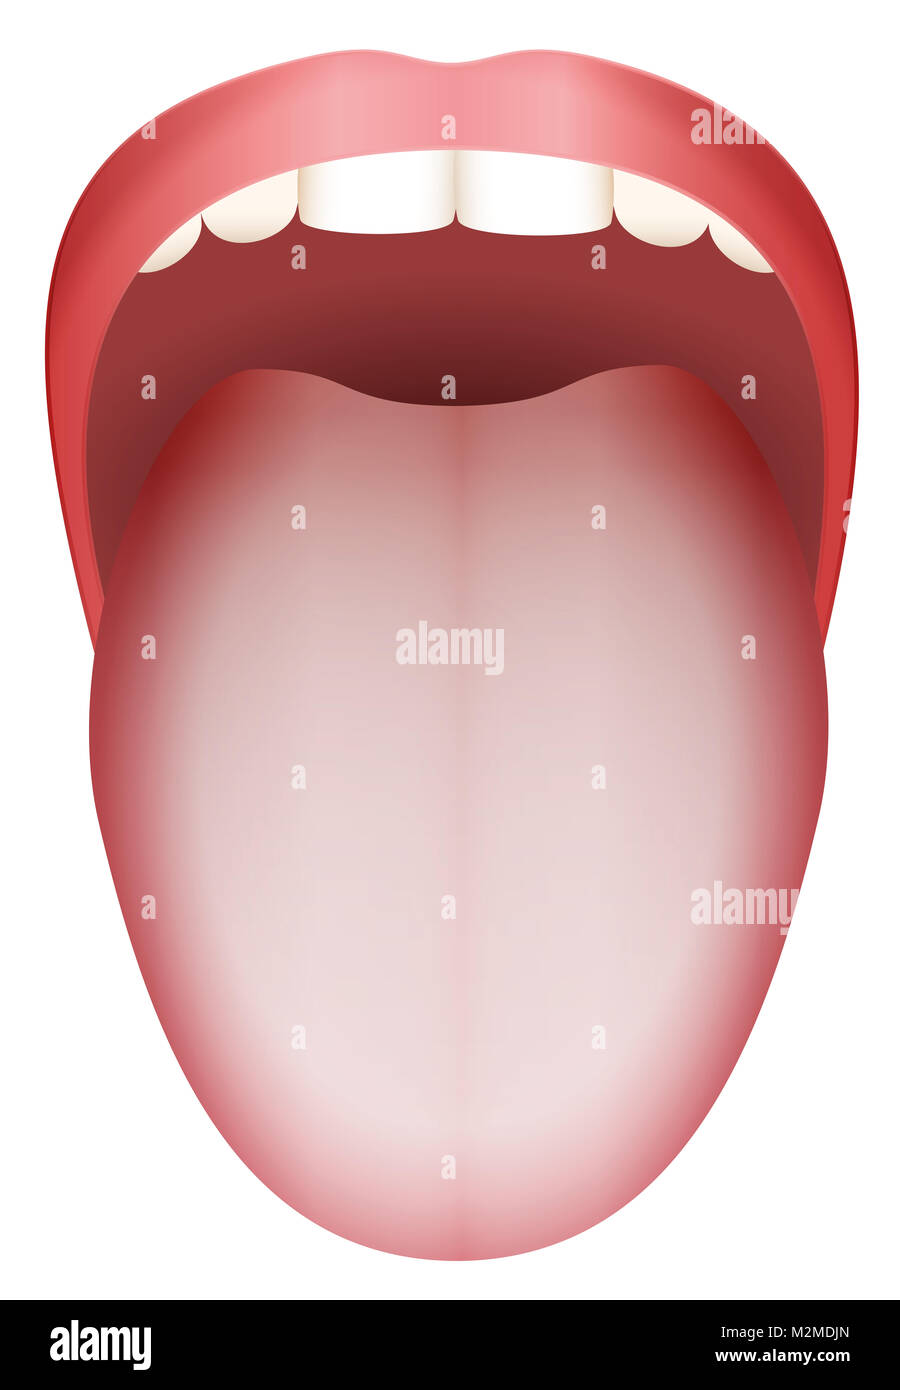 White coated tongue - illustration on white background. Stock Photo